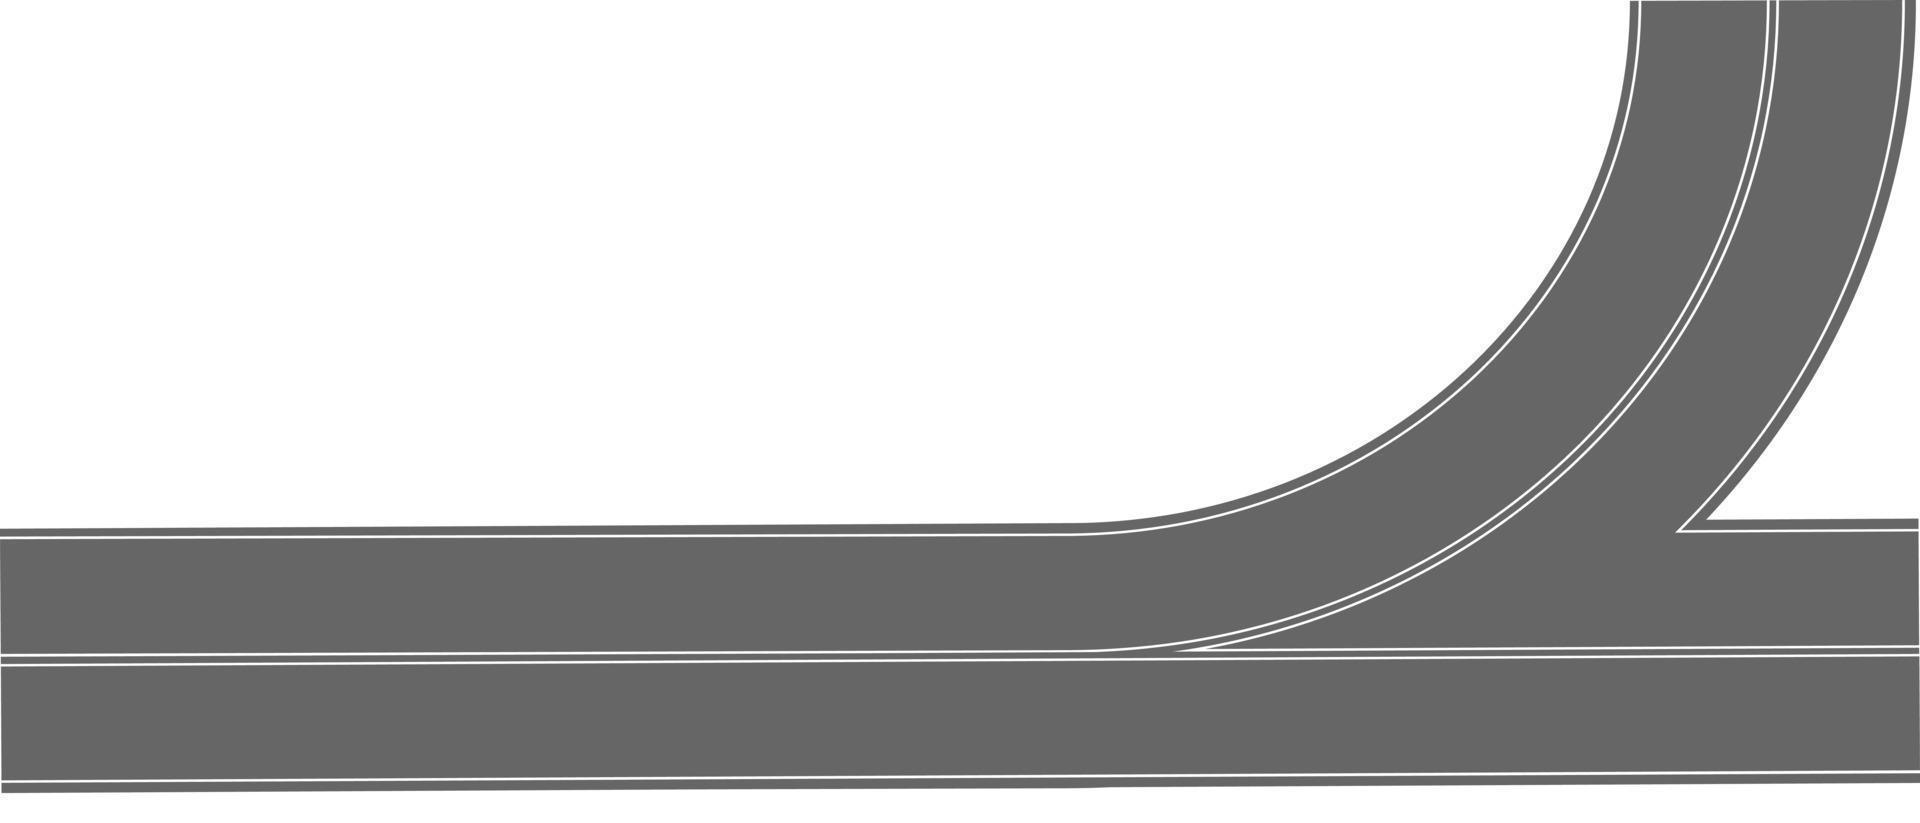 vista superior de la carretera de giro recto. Parte de la carretera con marcado. elemento de carretera asfaltada para el mapa de la ciudad vector